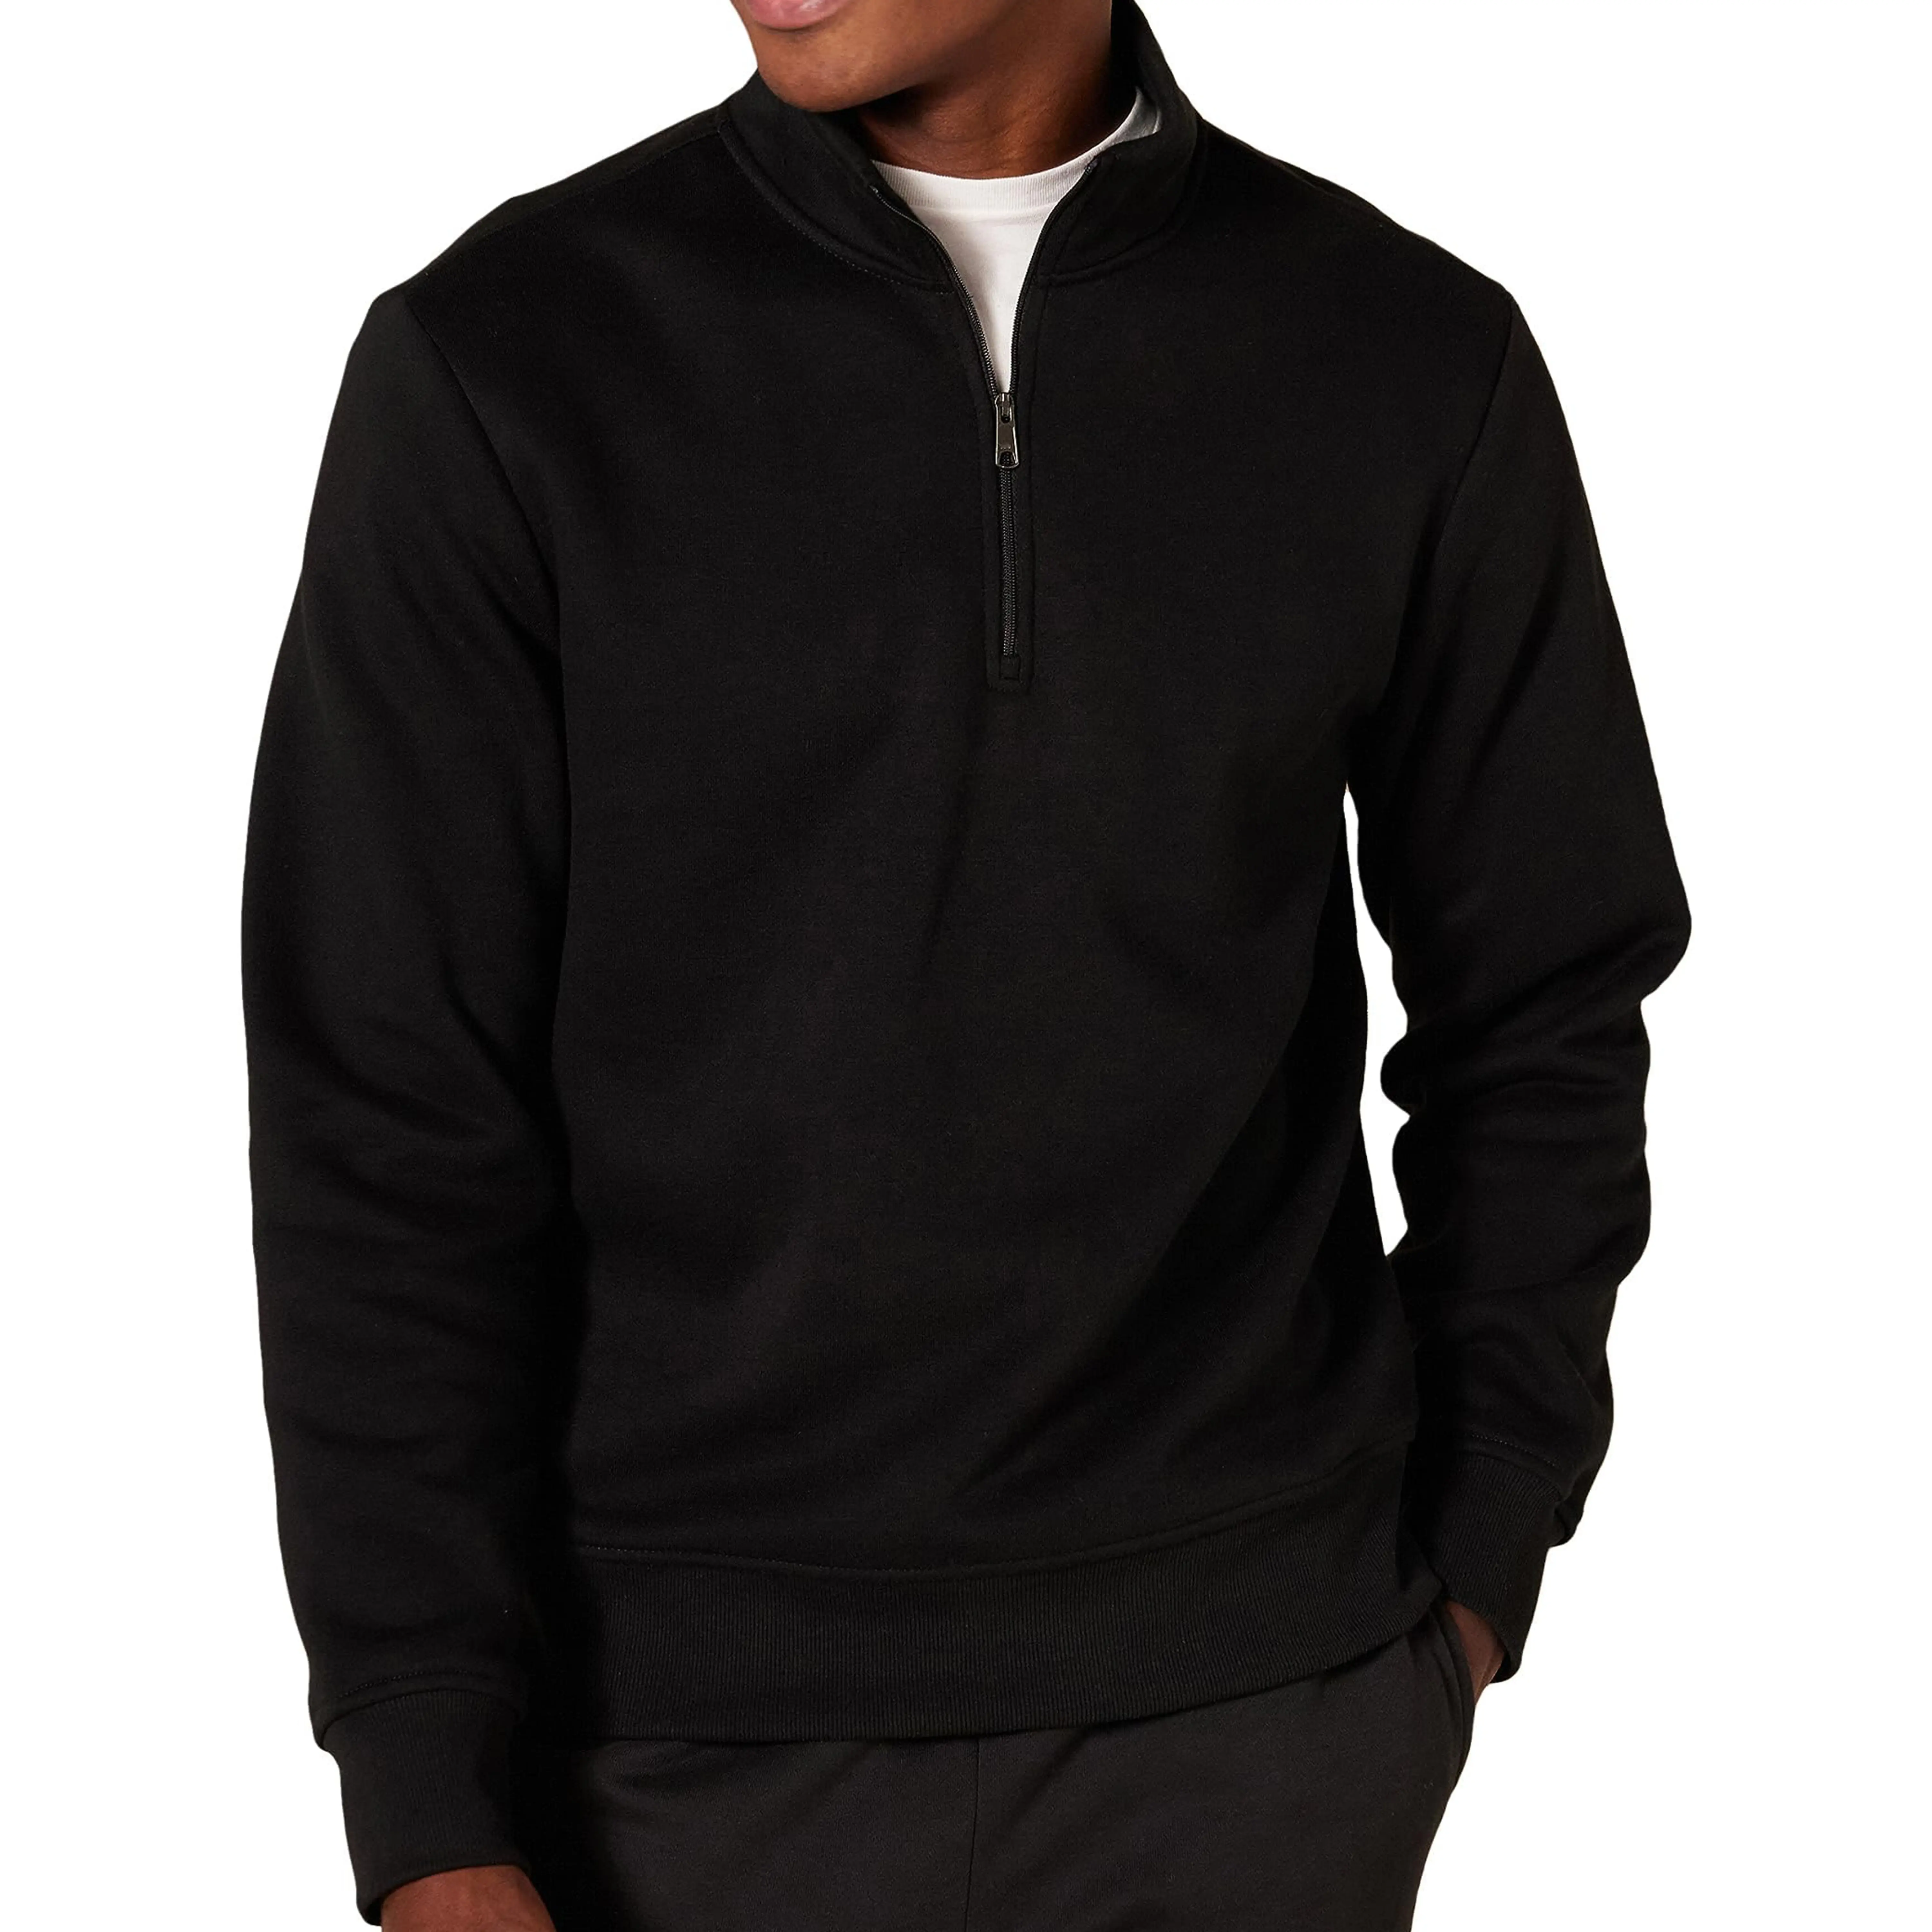 320 Gsm Solid Color Casual Crew Neck Sweatshirt Long Sleeve 1/4 Quarter Zip Collar Hoodie Pullover Sweatshirts For Men